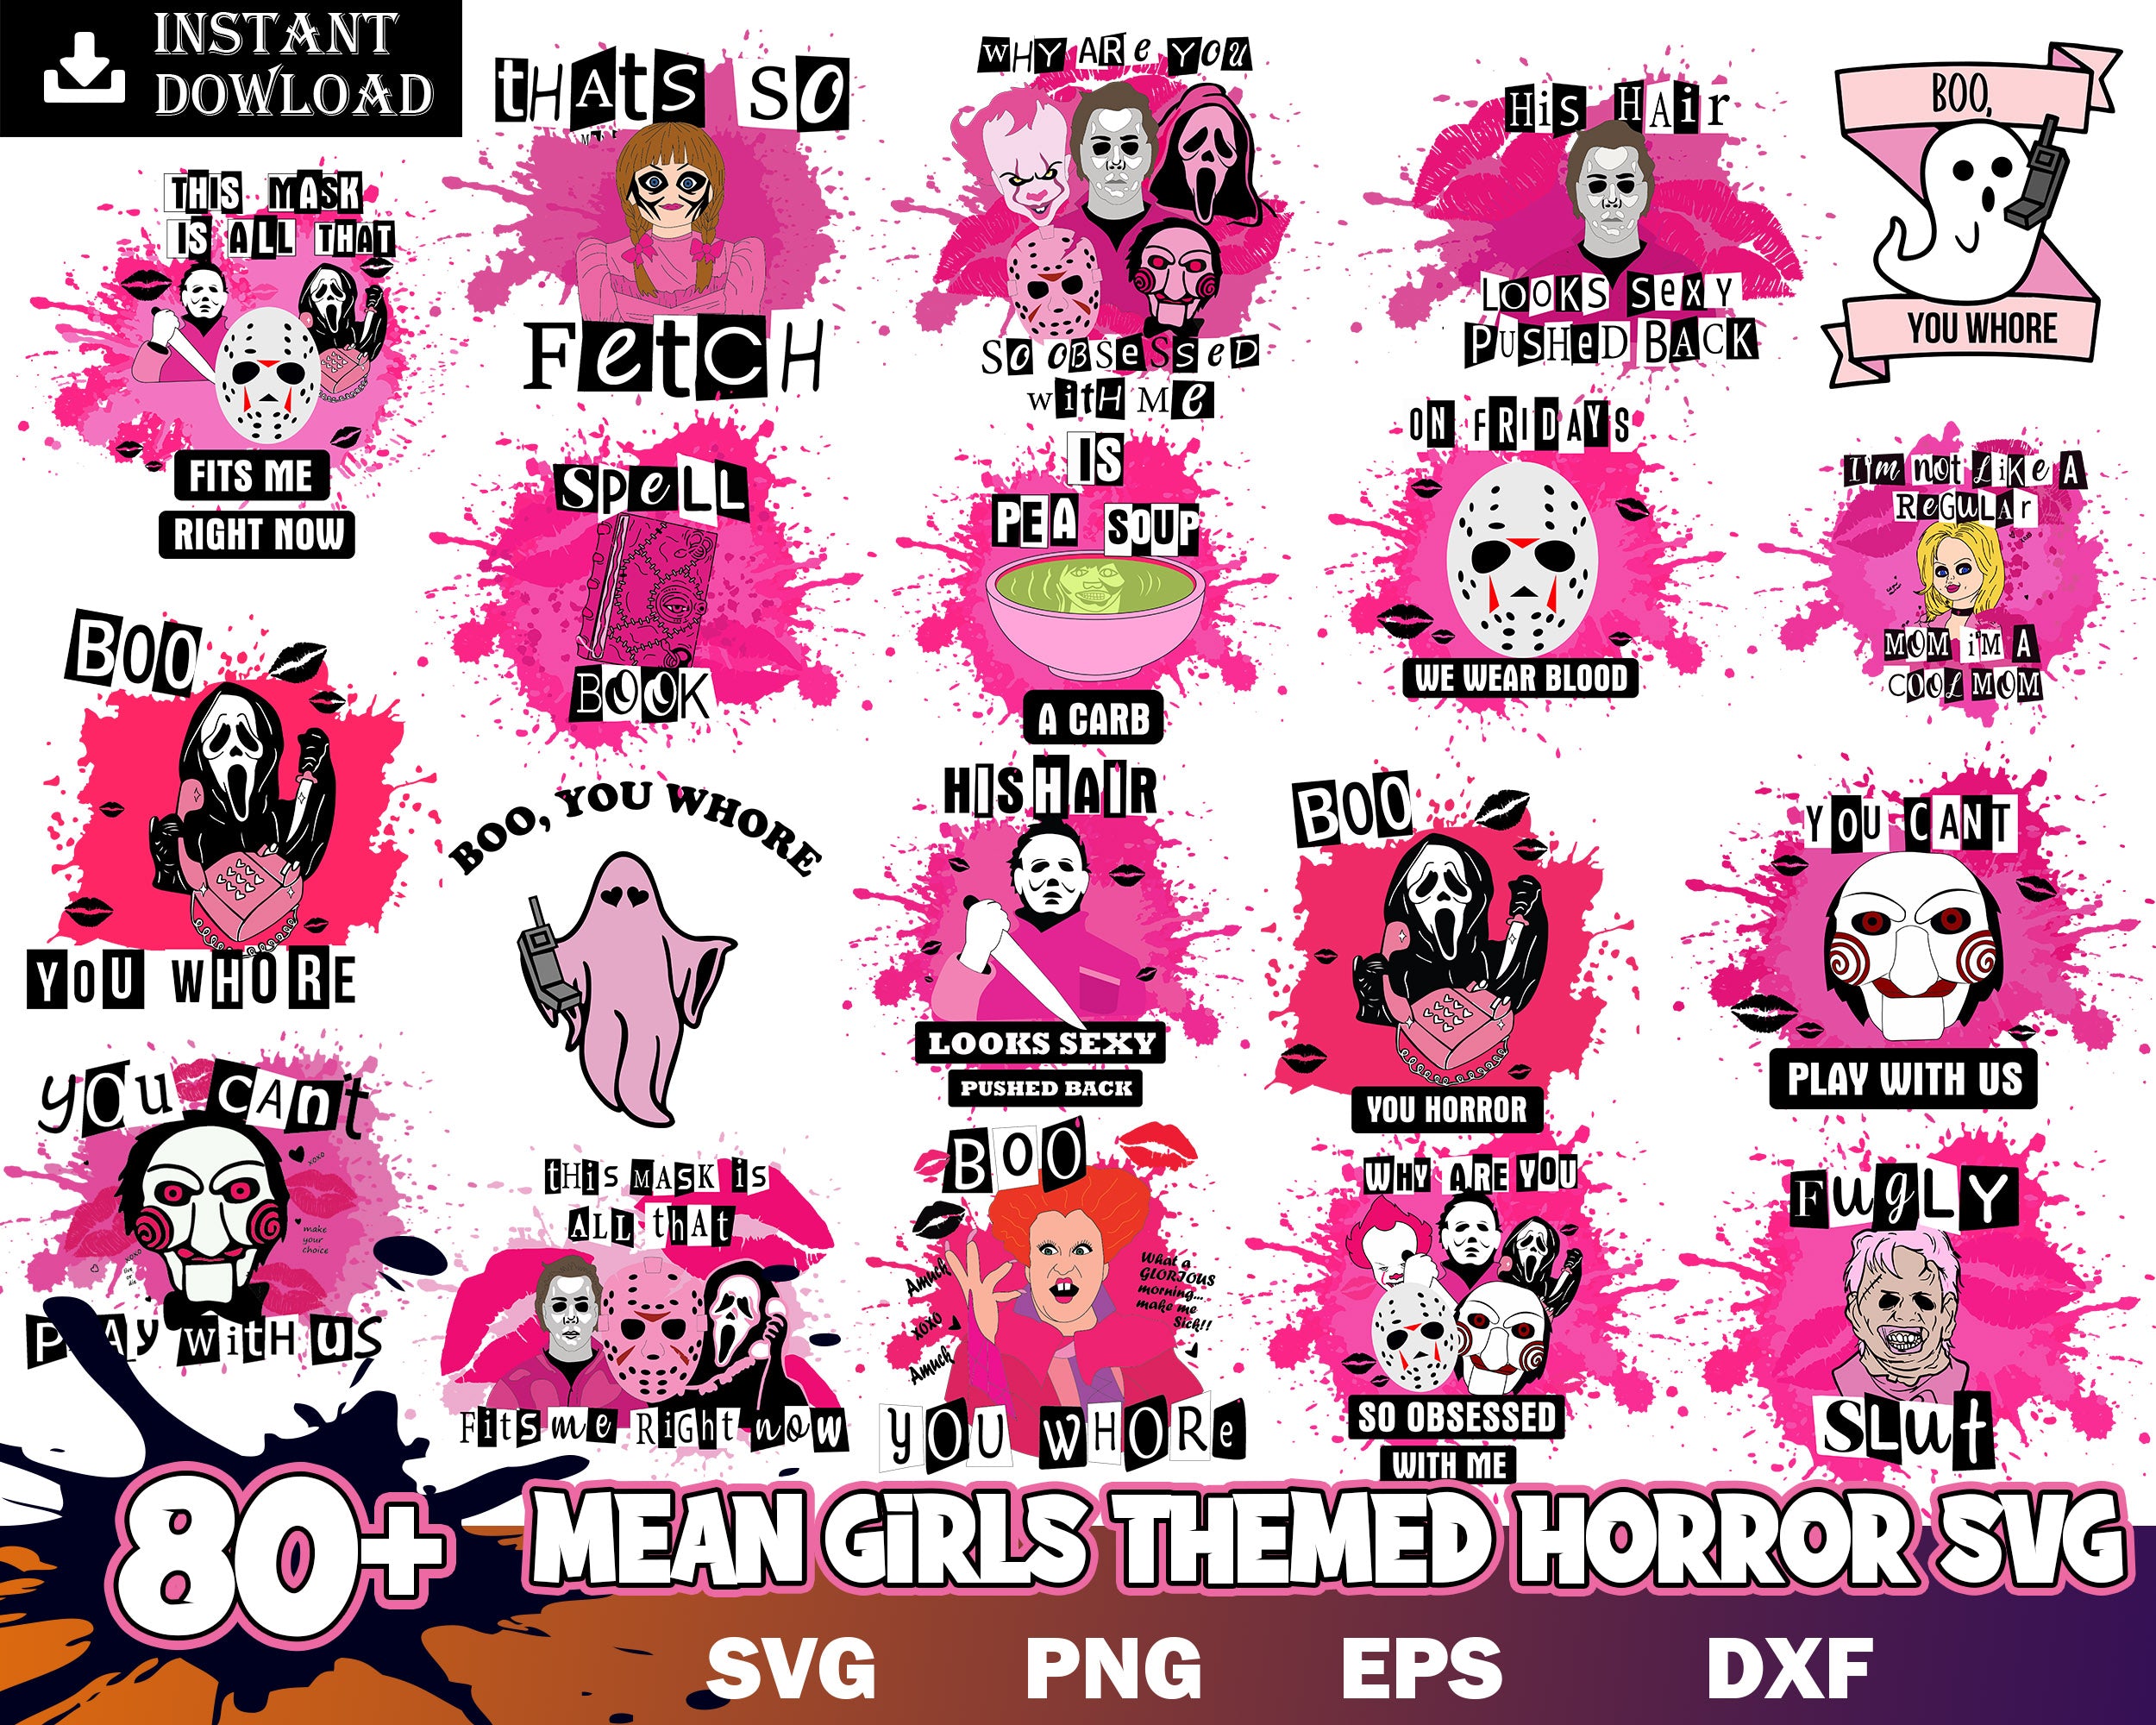 80+ Mean girls themed horror SVG, Halloween bundle svg, Halloween svg, Digital file